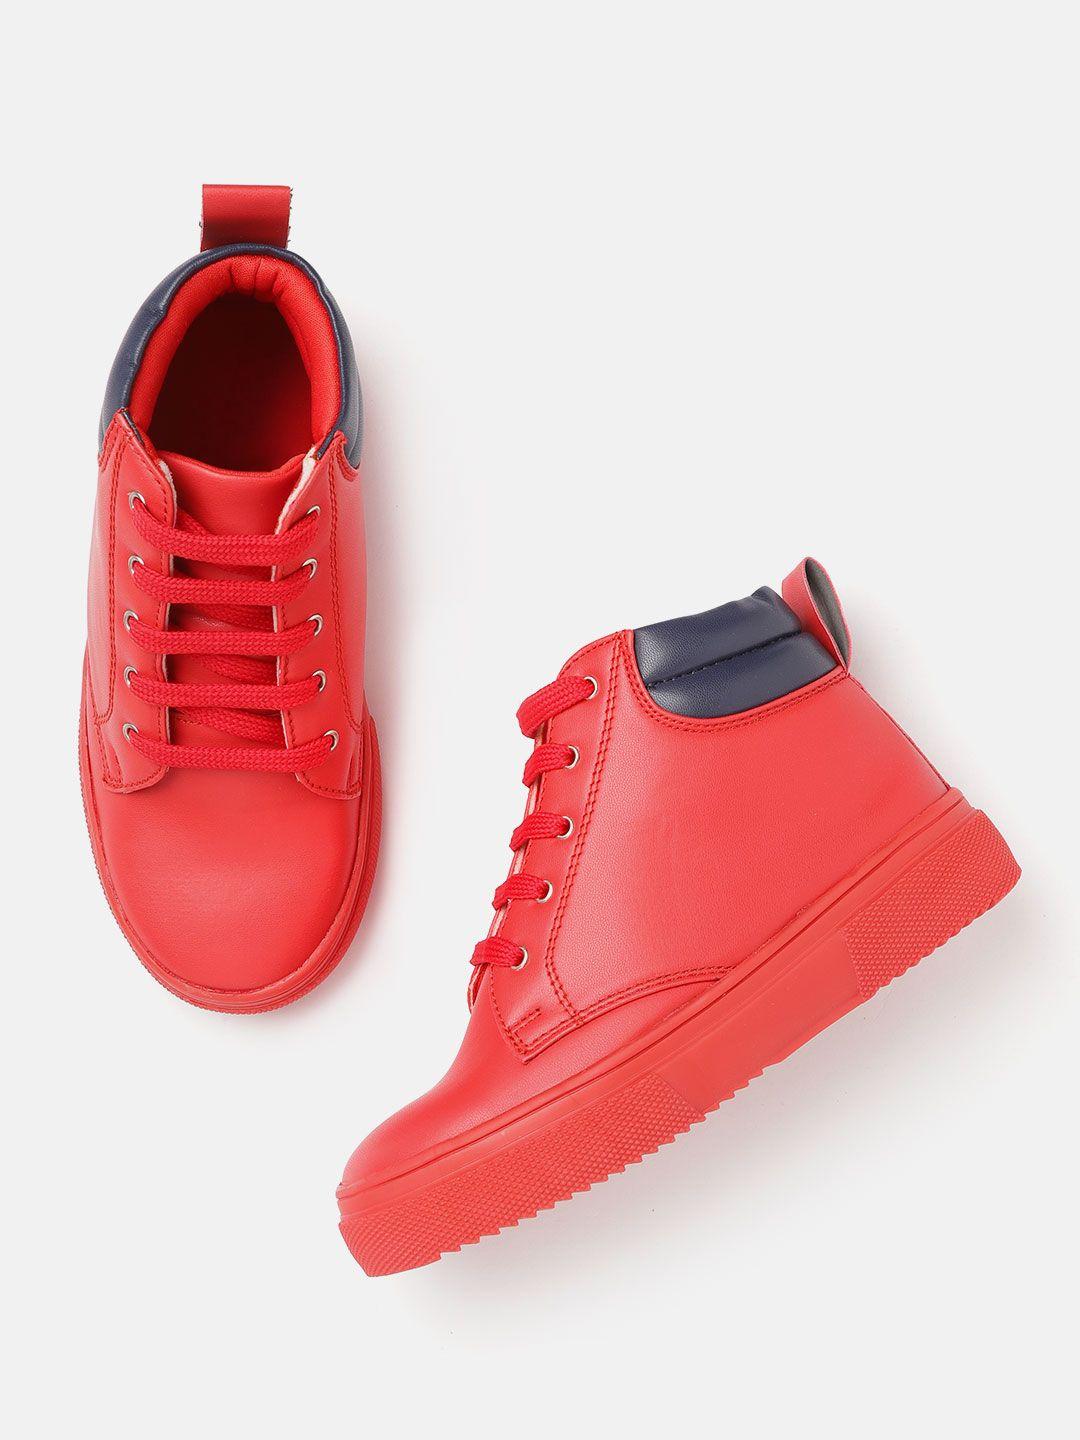 yk boys red mid-top sneakers